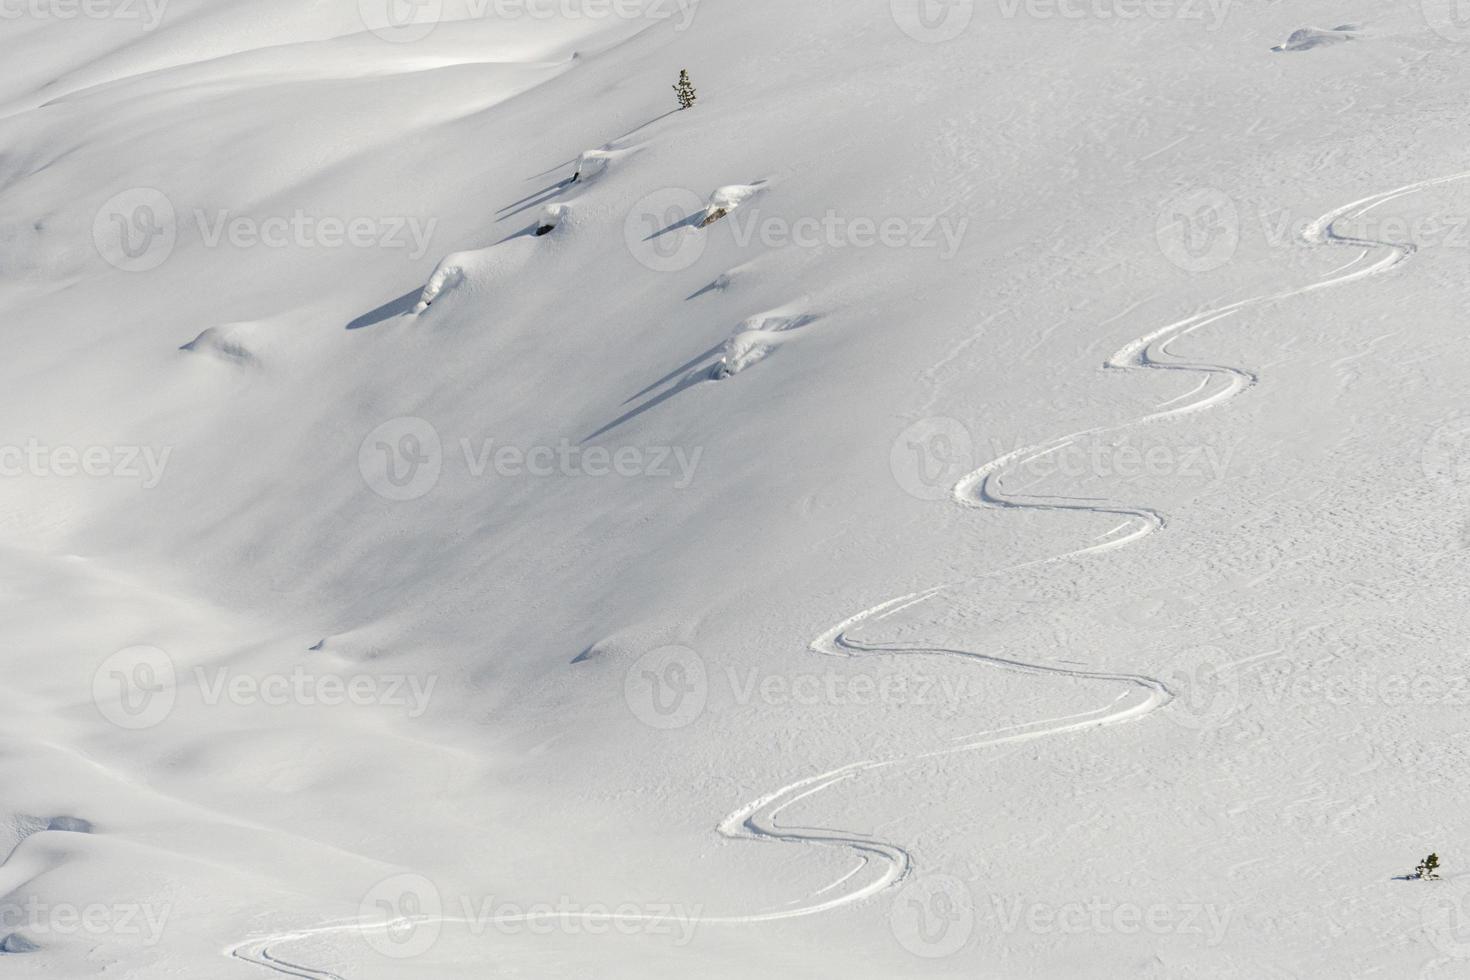 pistas do céu esquiando nos alpes dolomitas foto